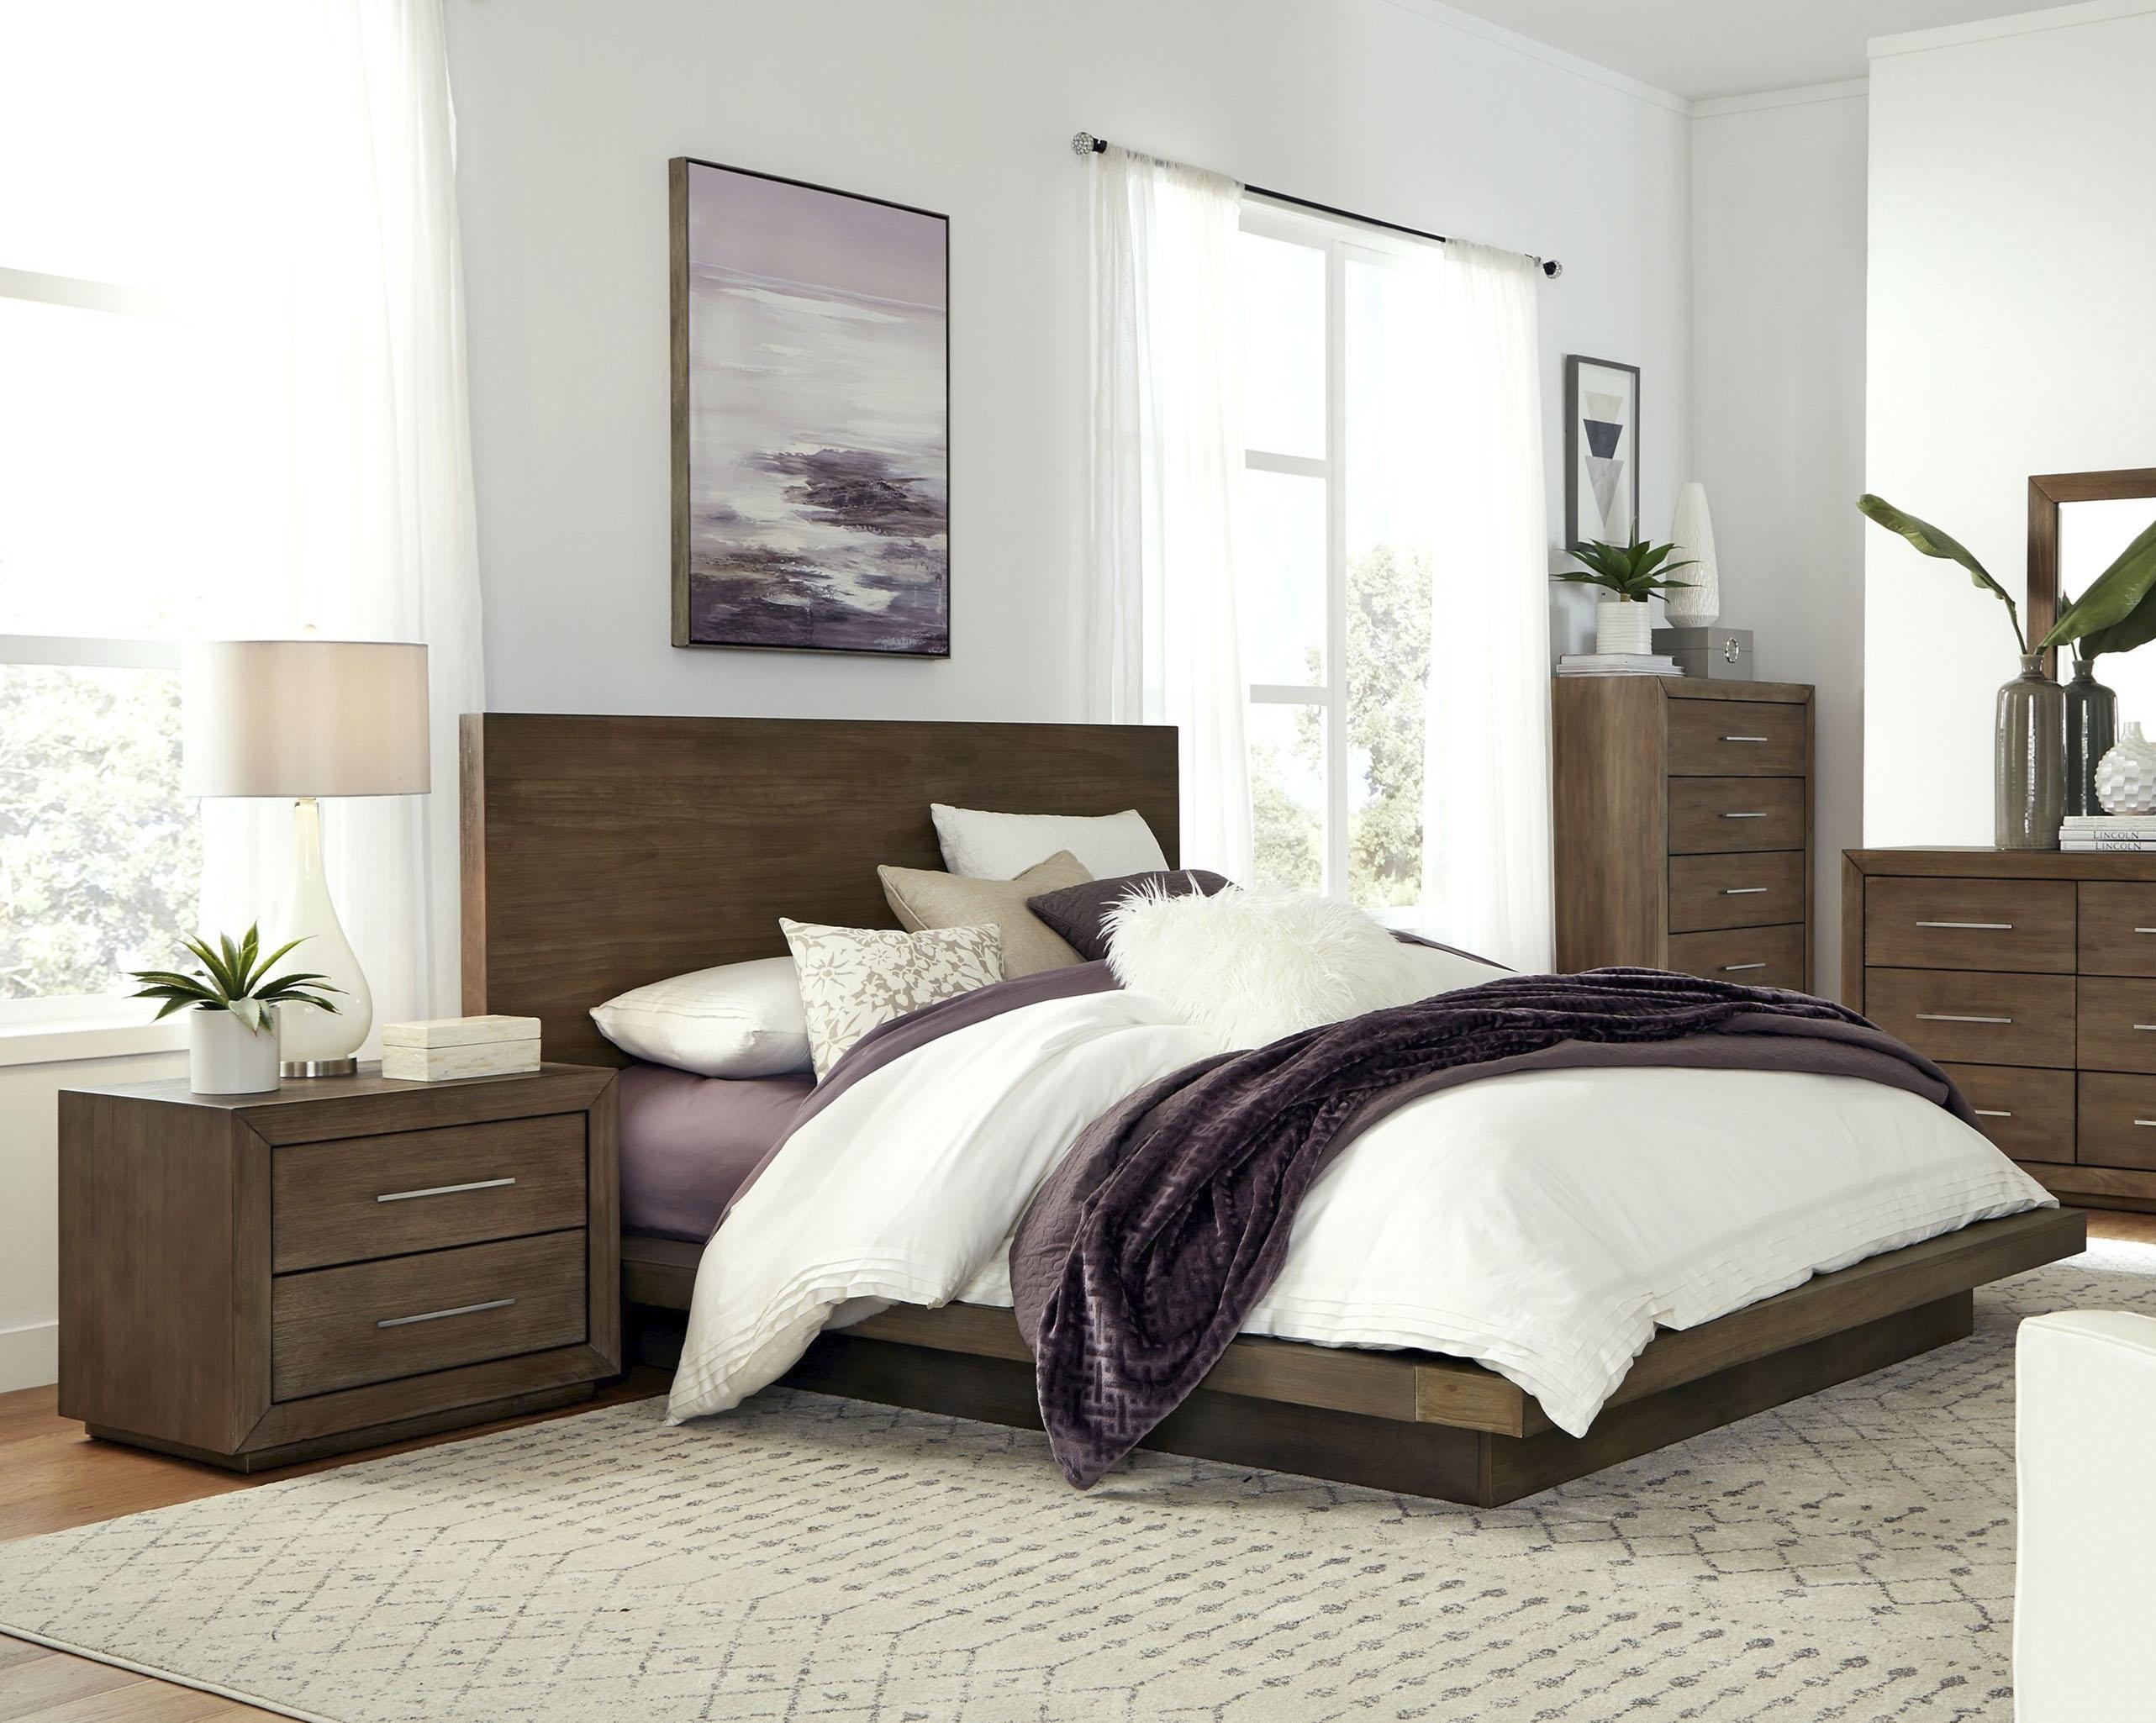 

    
Rustic Dark Pine King Platform Bedroom Set 3Pcs MELBOURNE by Modus Furniture
